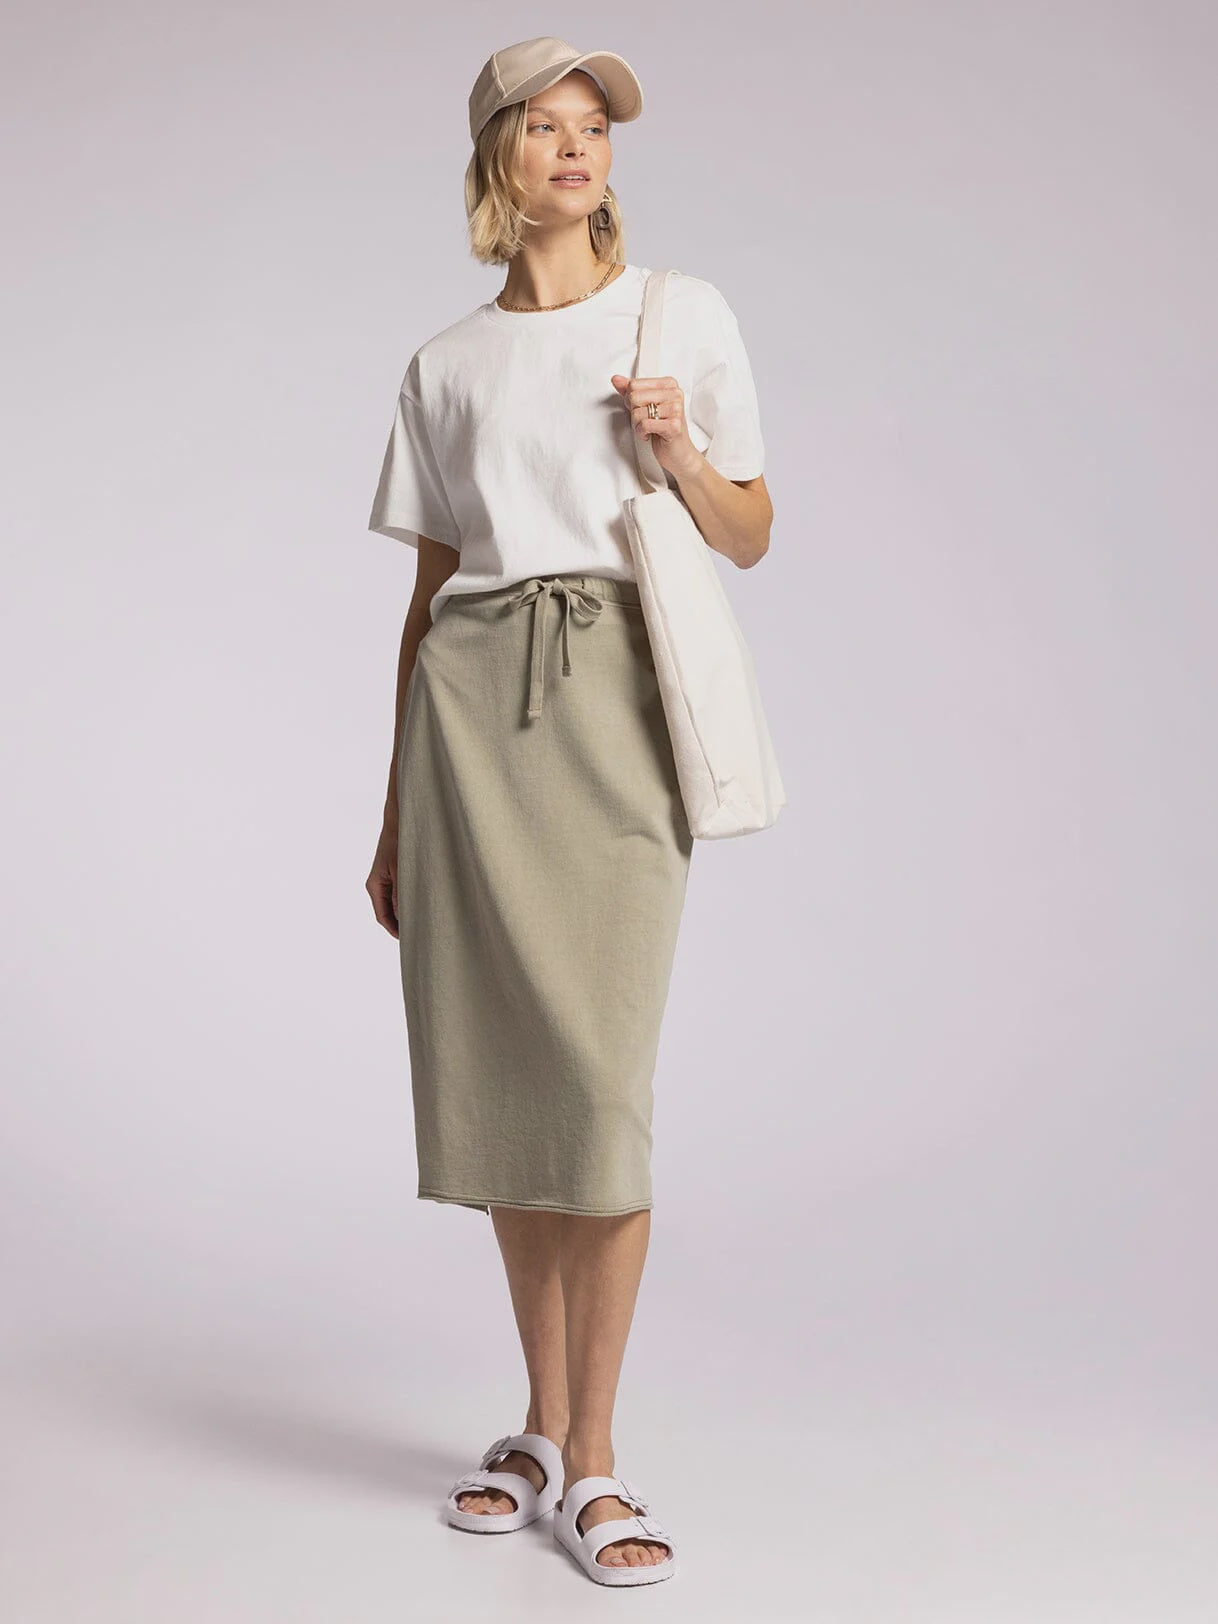 Raiya Skirt by Thread & Supply